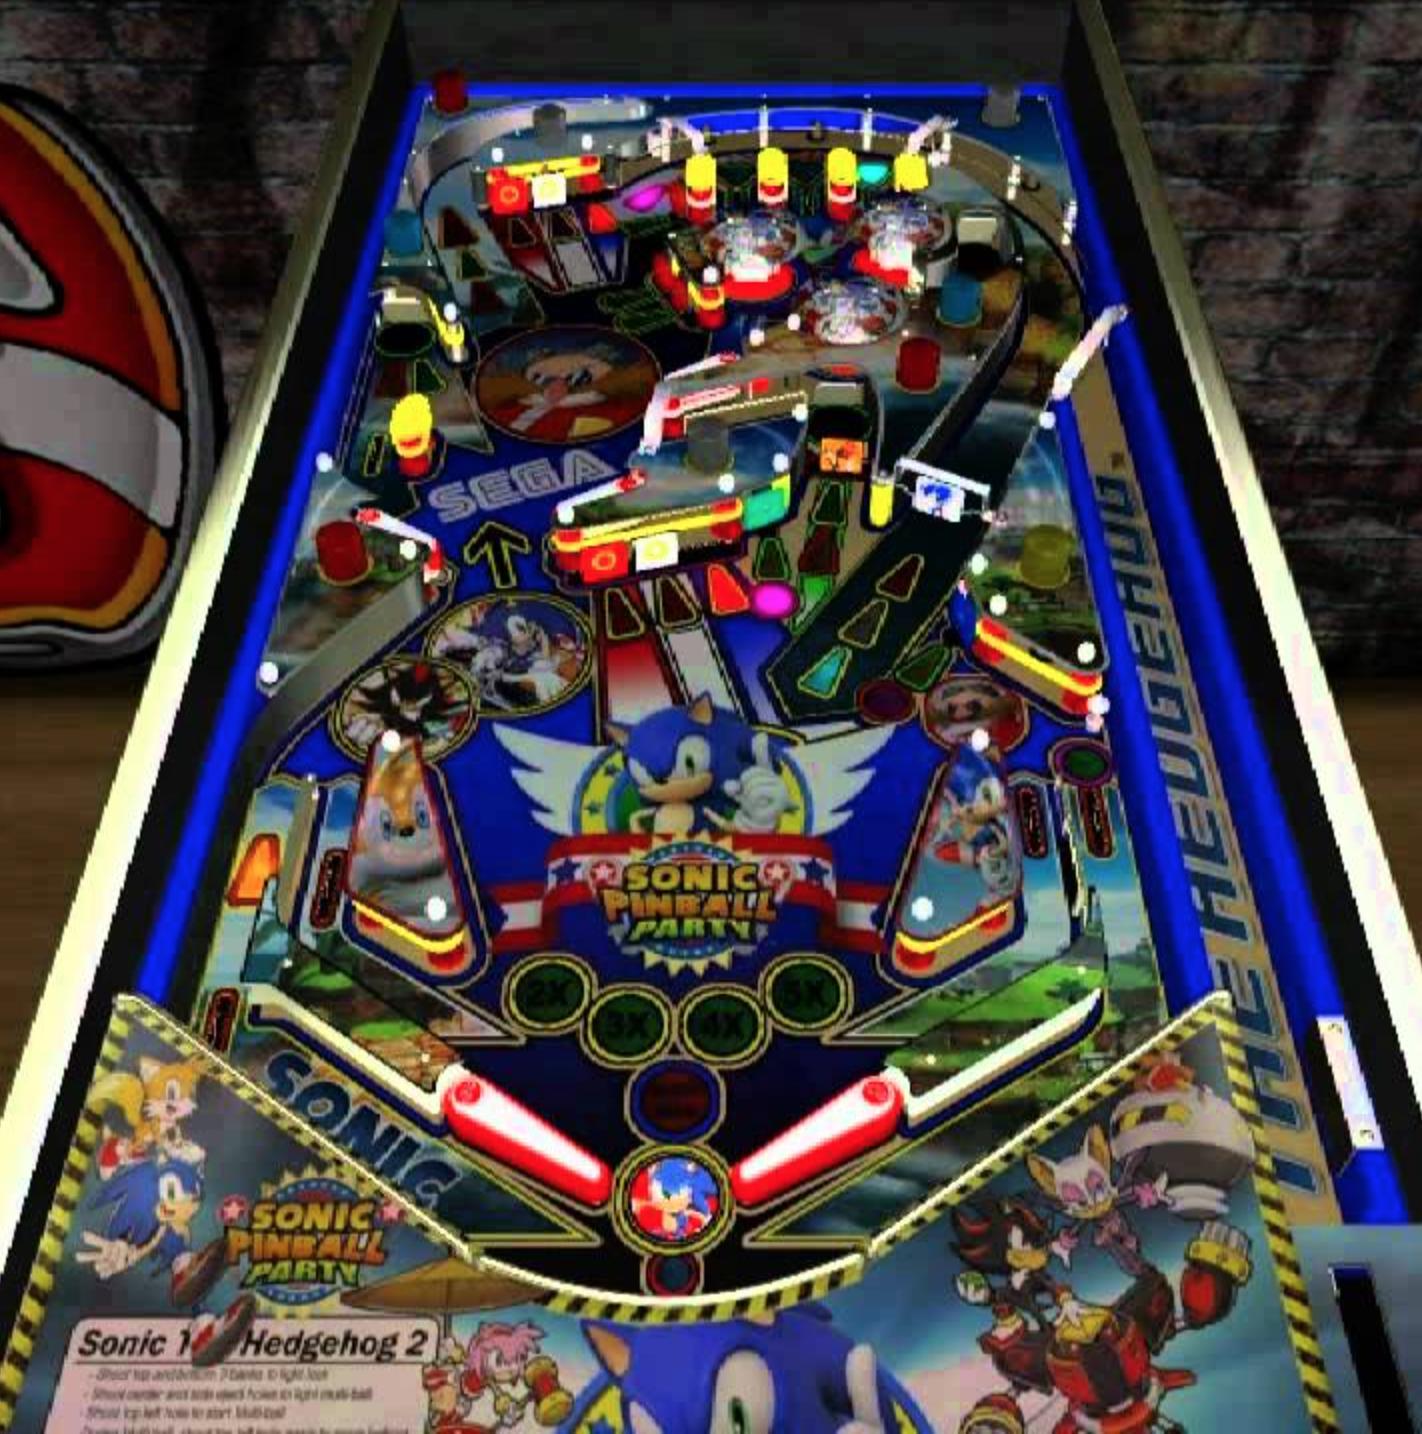 Sonic Pinball Party - Wikipedia